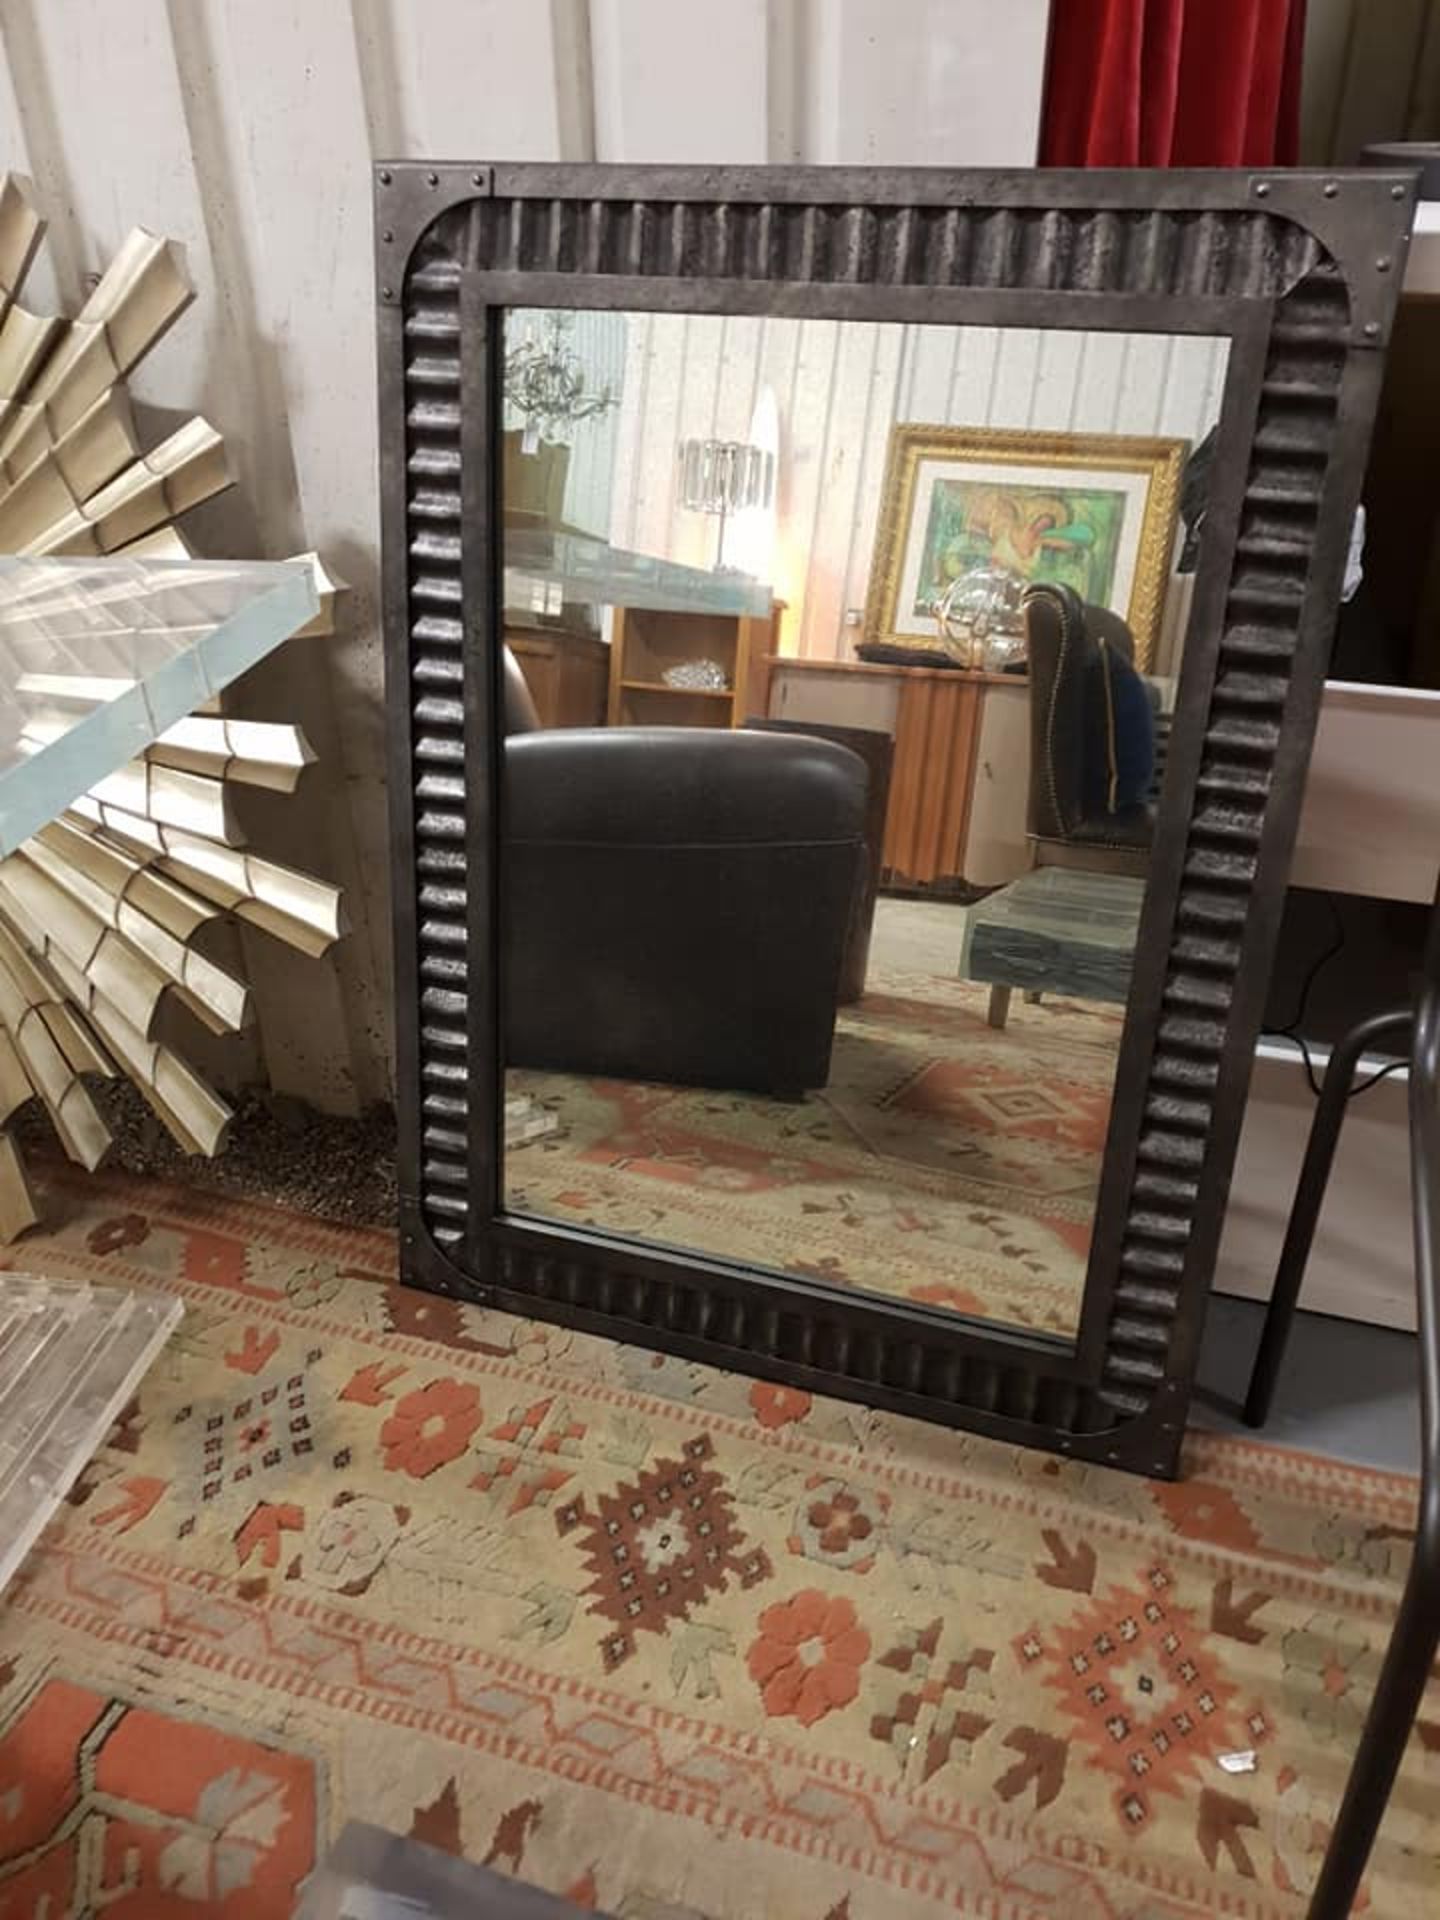 Jawa Mirror Medium 91.4 x 3.8 x 121.9 cm Material Iron Frame + corrugated sheet metal + Antiqued